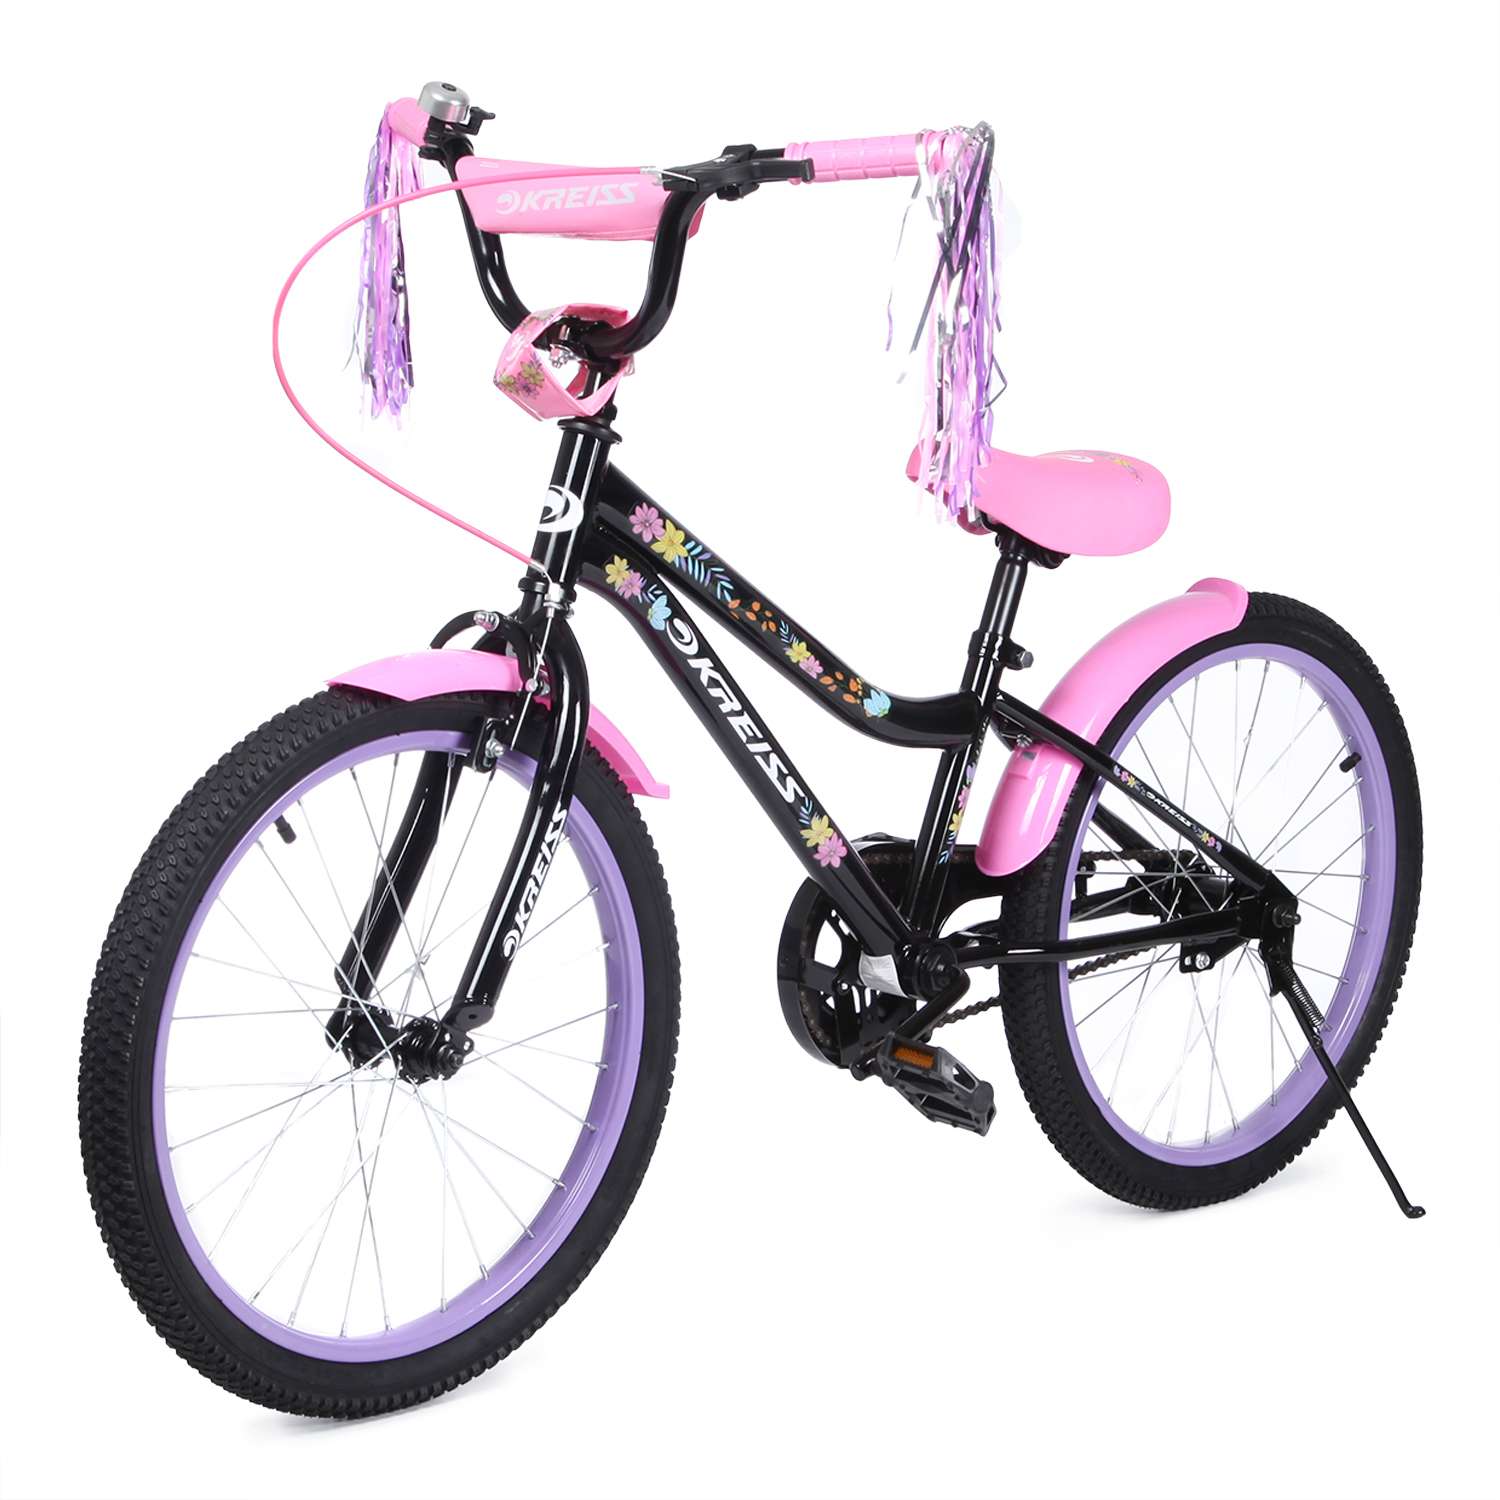 Купить велосипед в чебоксарах. Велосипед Kreiss 20. Велосипед Крейс 20 дюймов вн20228. Велосипед Kreiss 20 дюймов для девочки. Велосипед двухколесный Kreiss 14 дюймов.